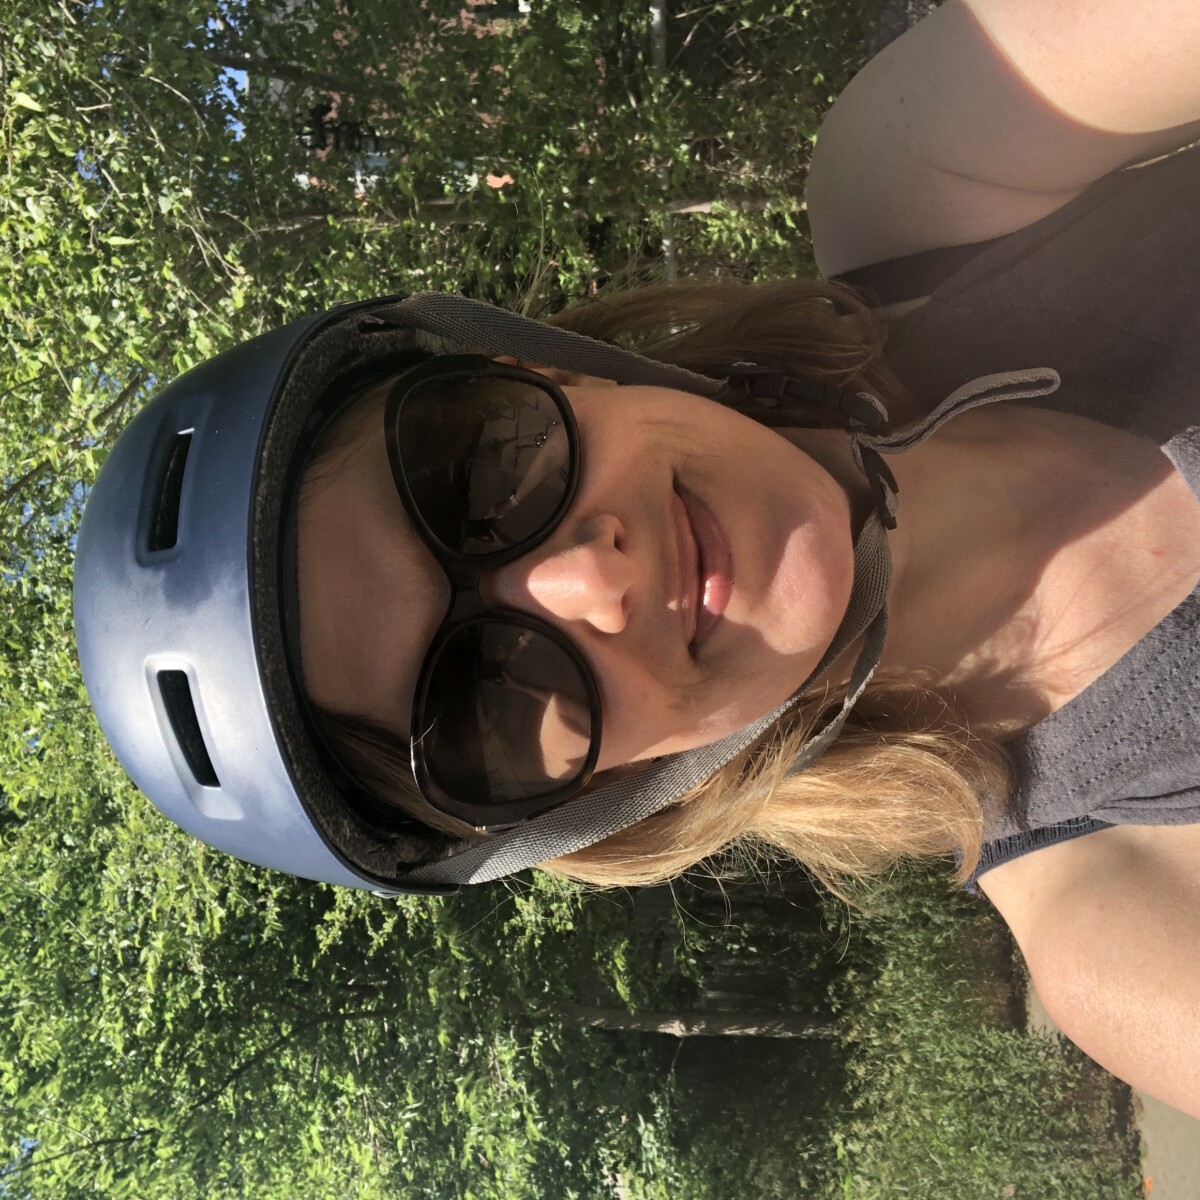 Natasha on her bike summer 2021